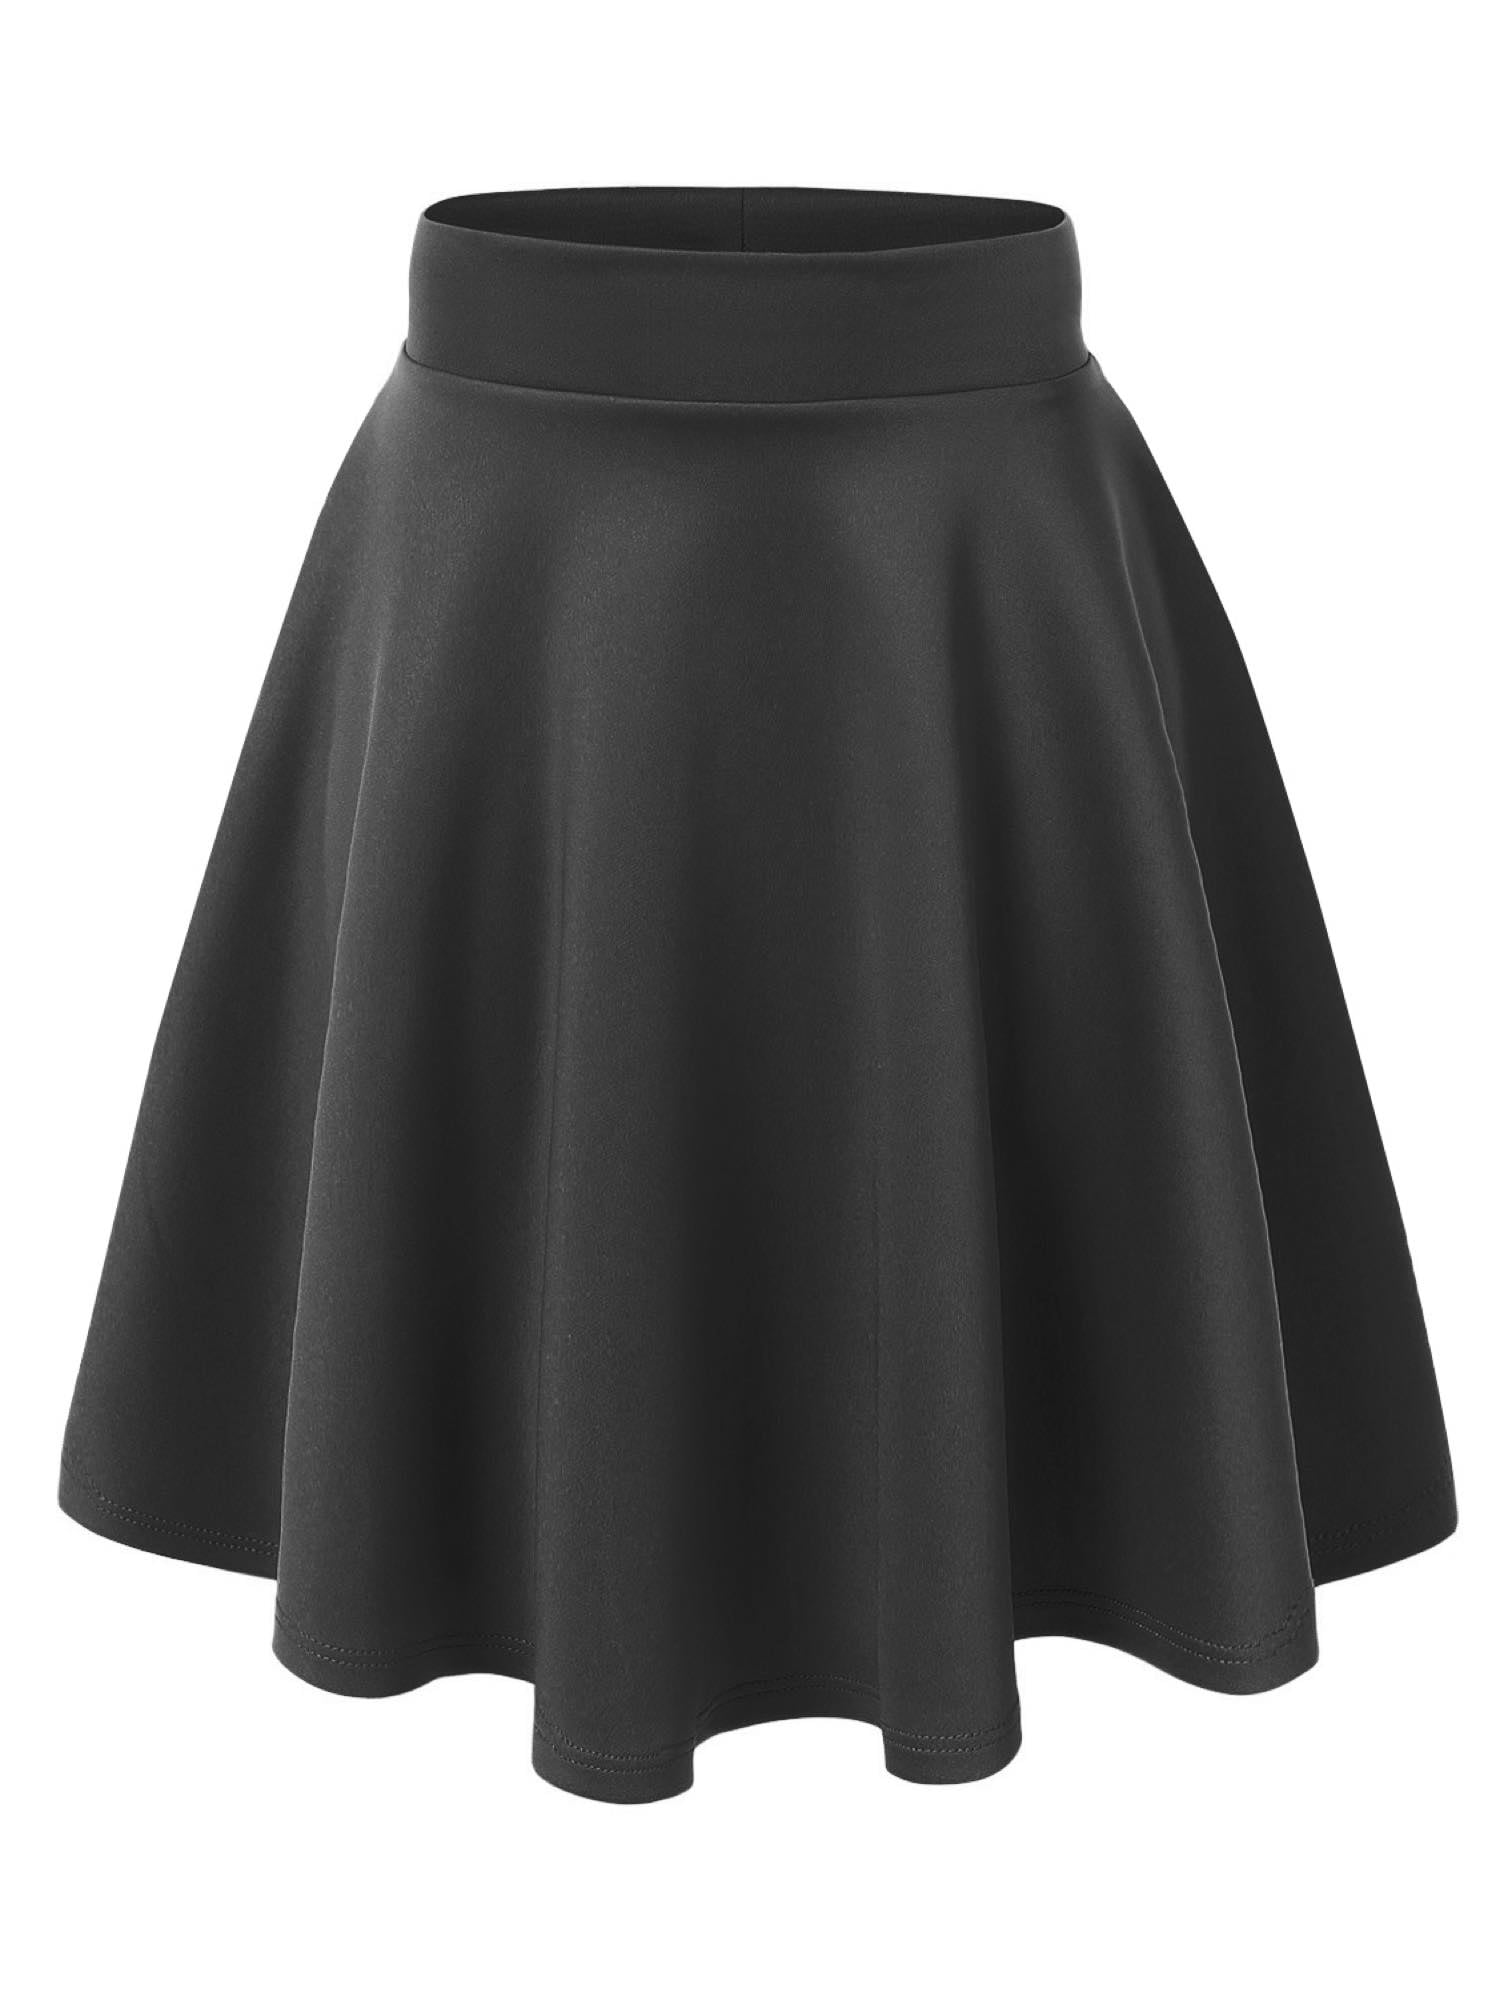 MBJ WB829 Womens Flirty Flare Skirt S BLACK 